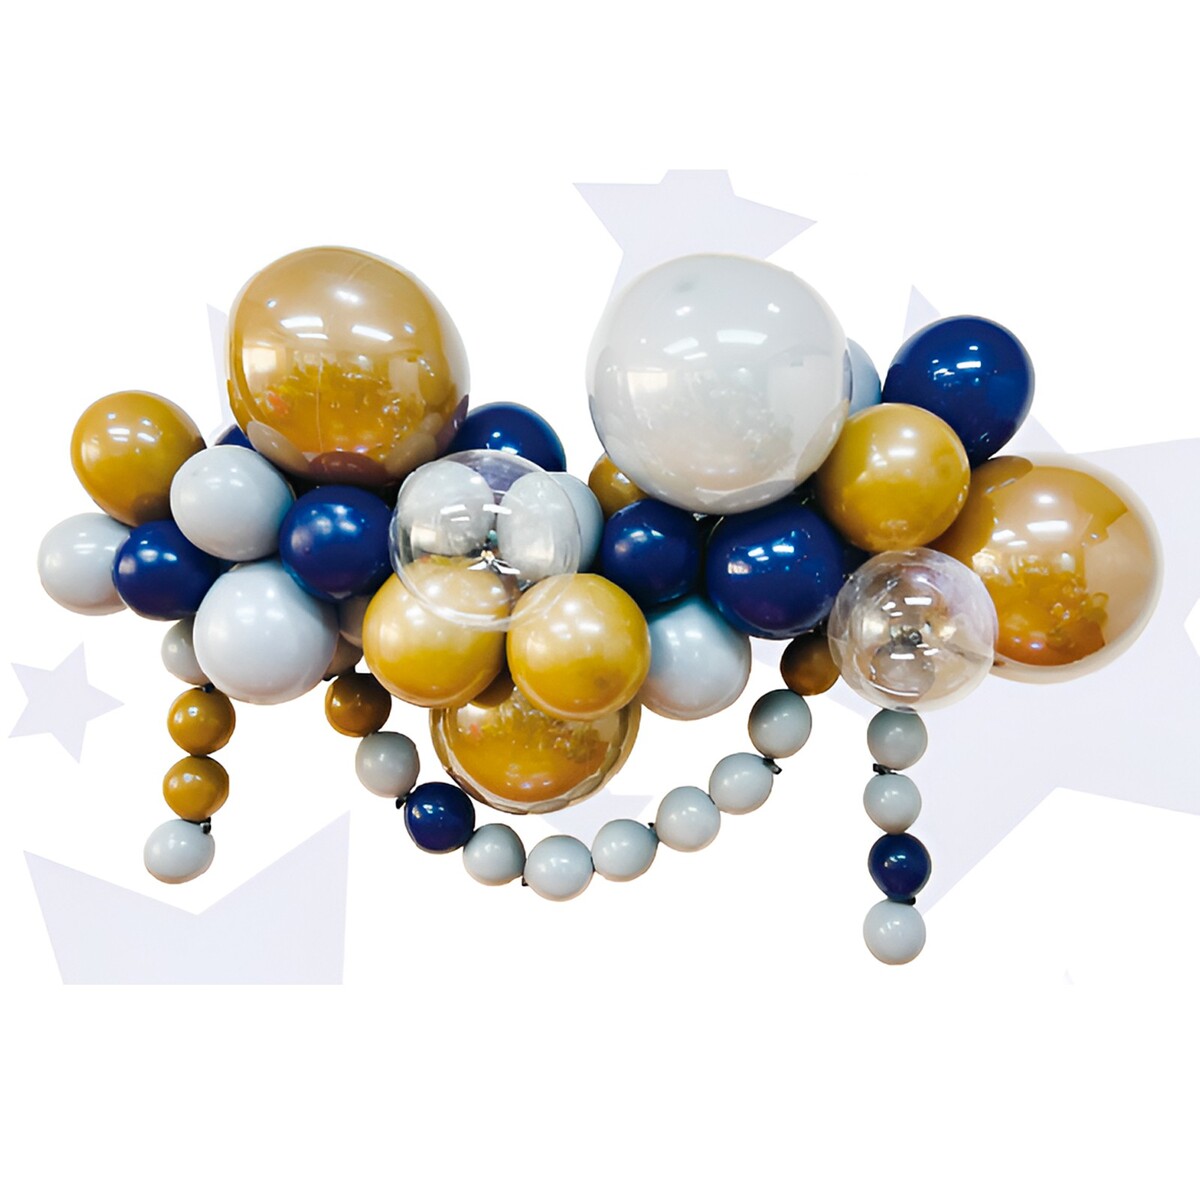 Набор для создания композиций из воздушных шаров, набор 52 шт., коричневый, серебро, синий 100622 набор для создания сумки из фетра